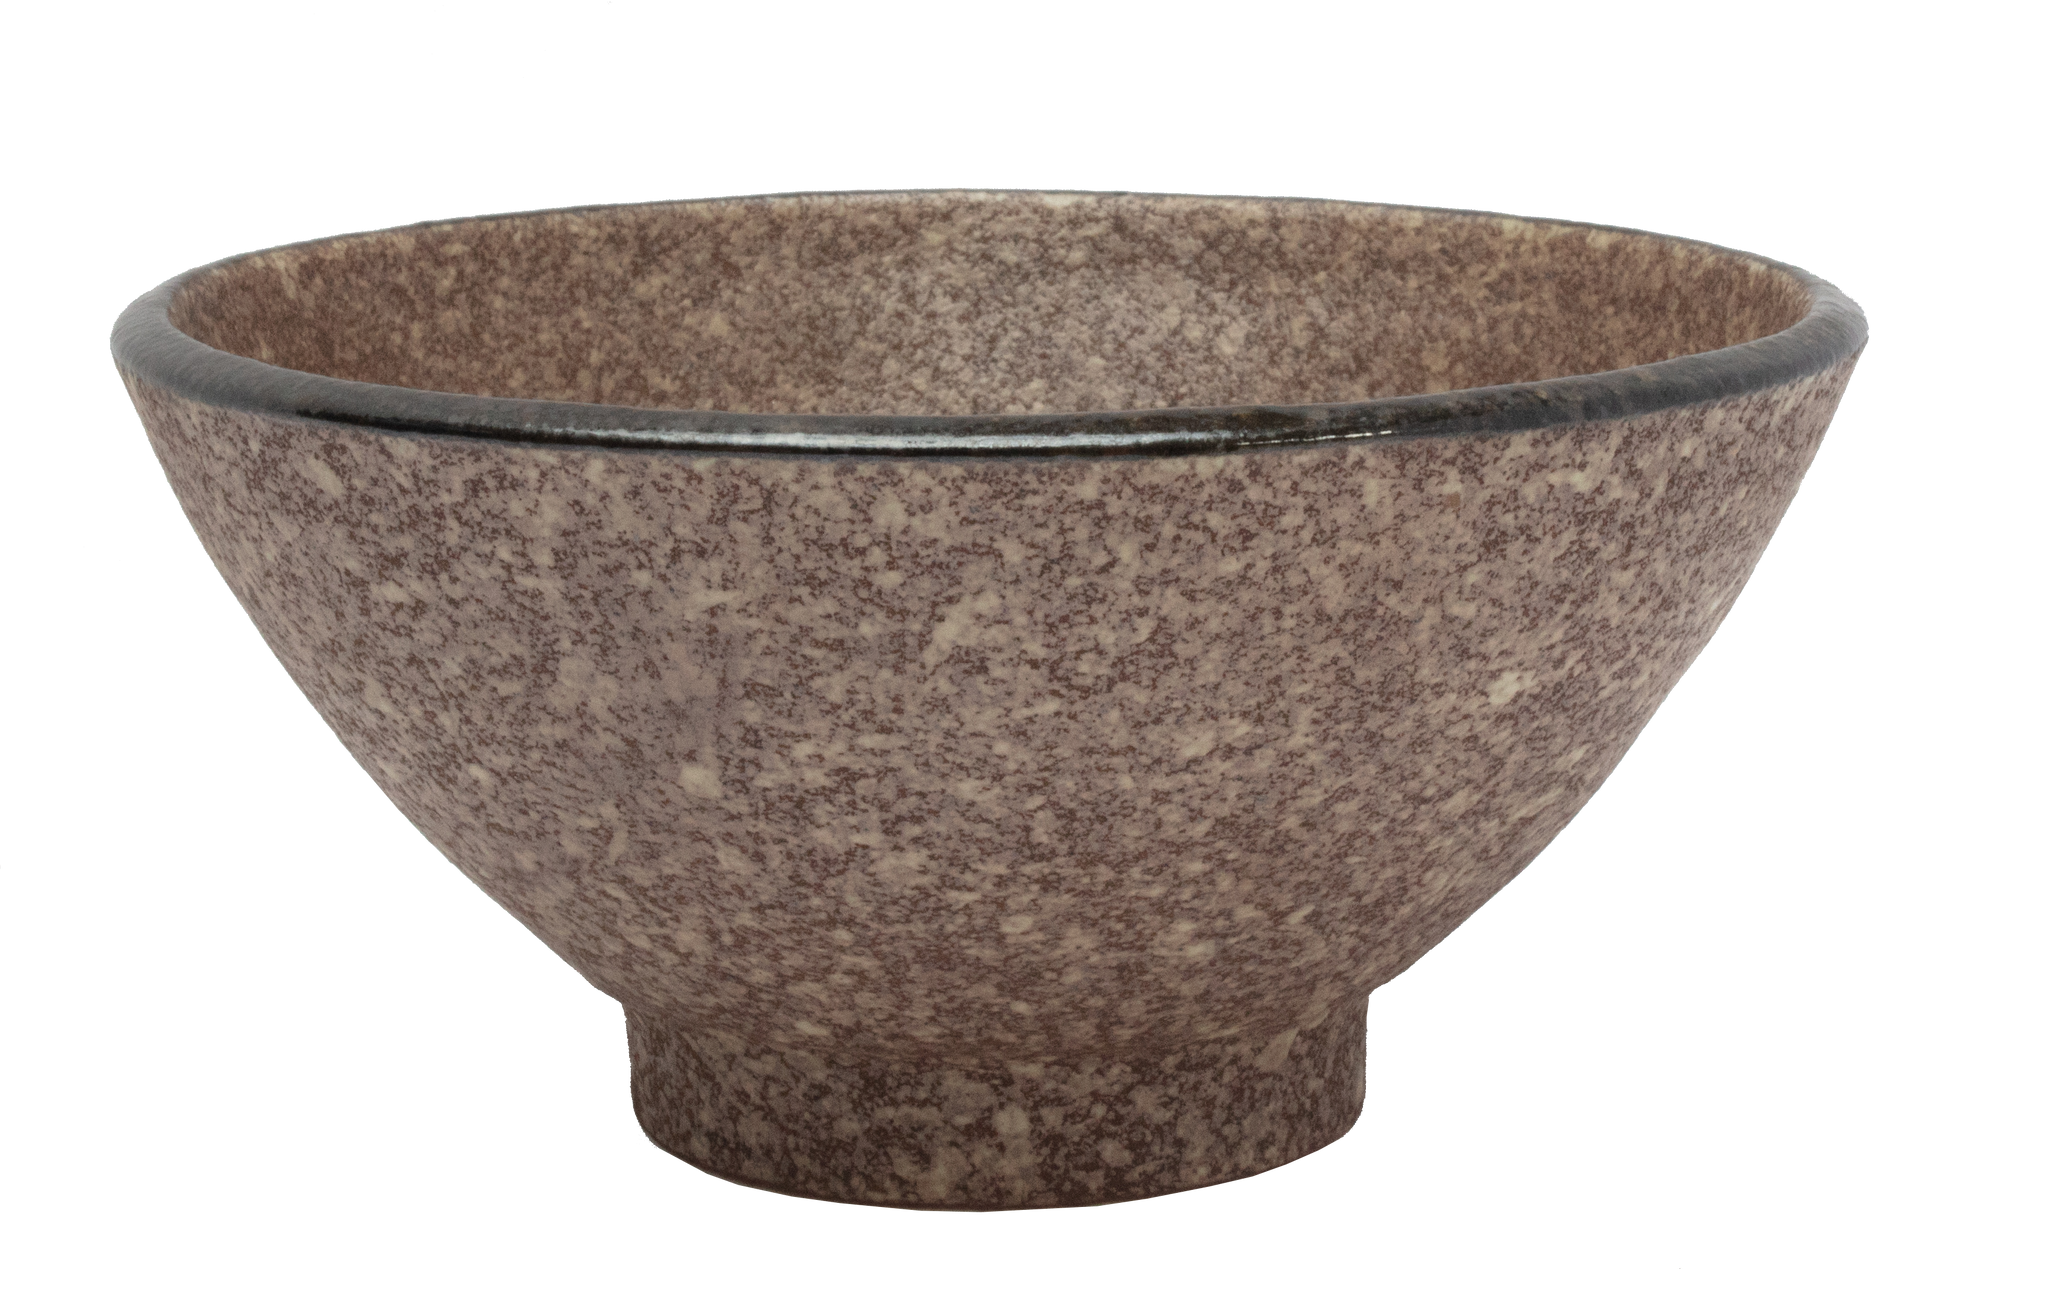 Earth Bowl Ø15 x H:7.3cm